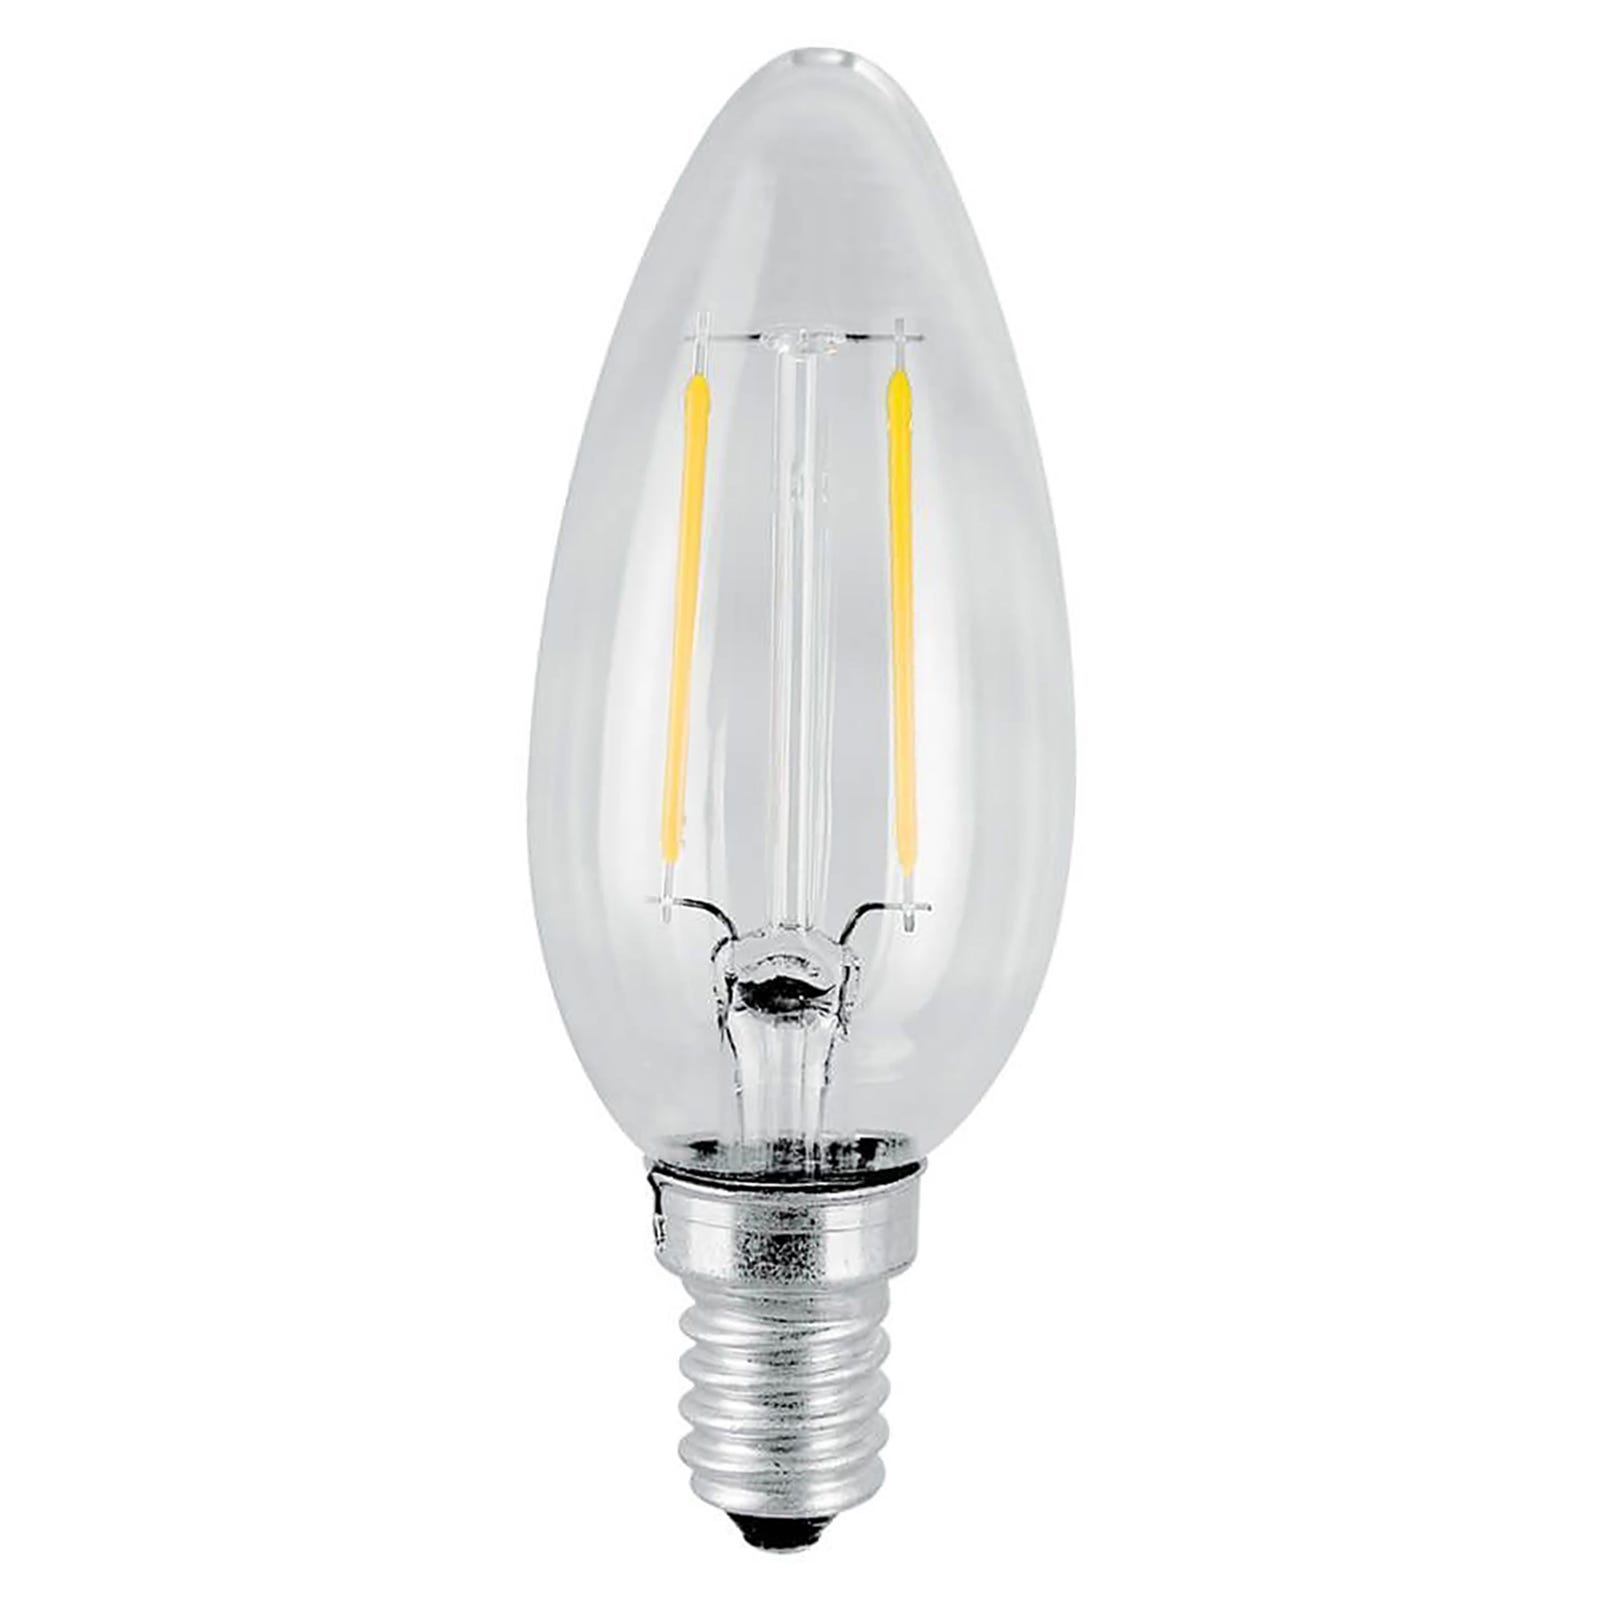 Ampoule 40W E27 230V - Lampe claire à incandescence avec filament